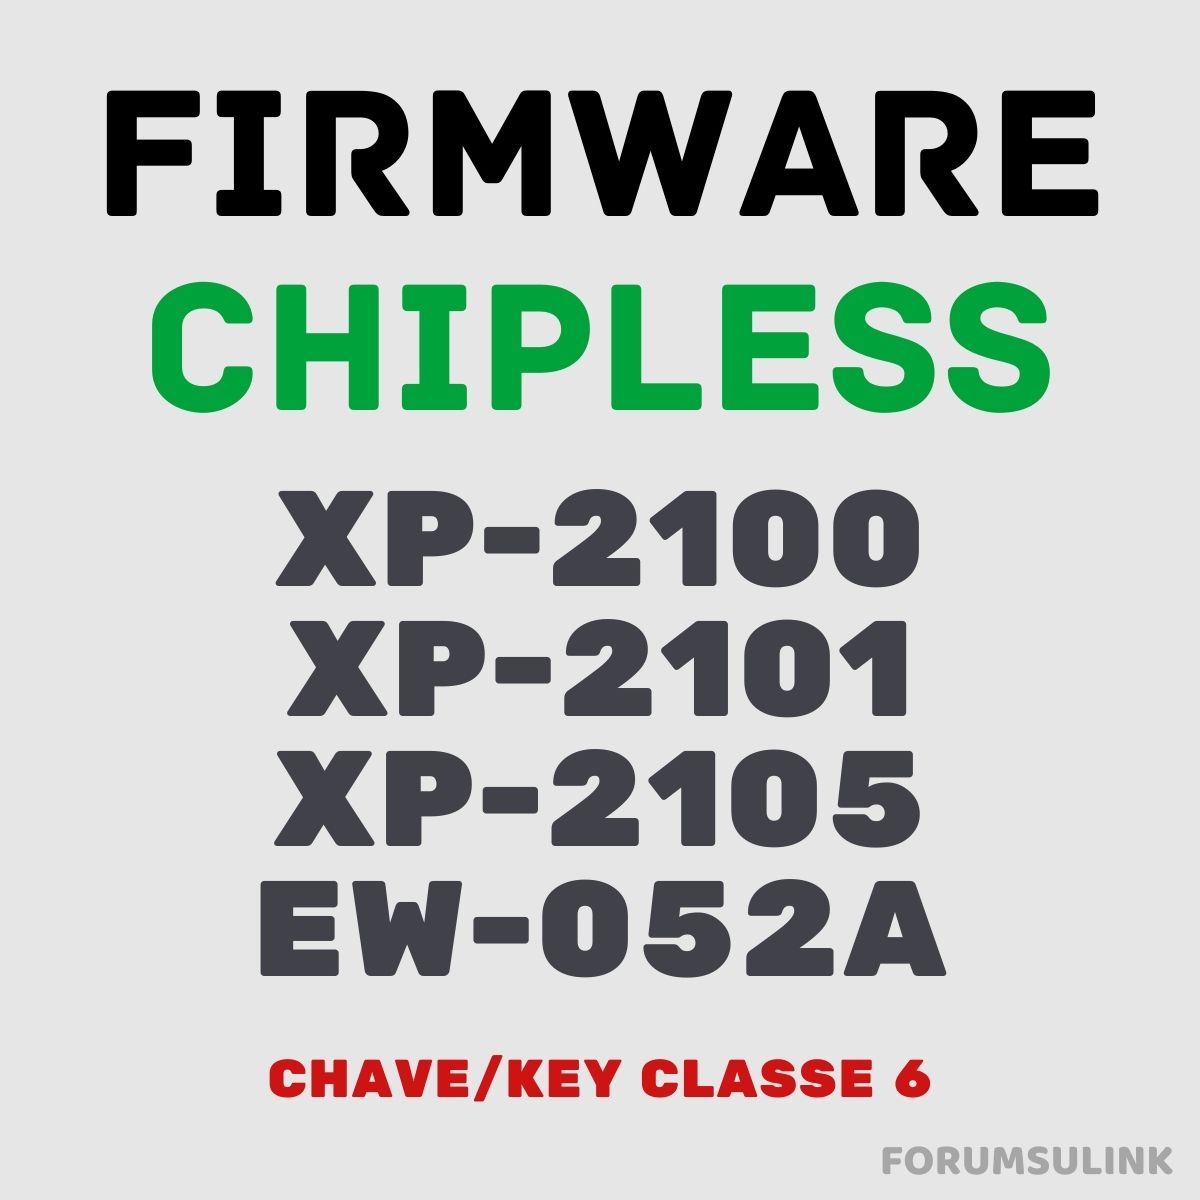 EPSON XP-2100, XP-2101, XP-2105 e EW-052A | Software Firmware ChipLess